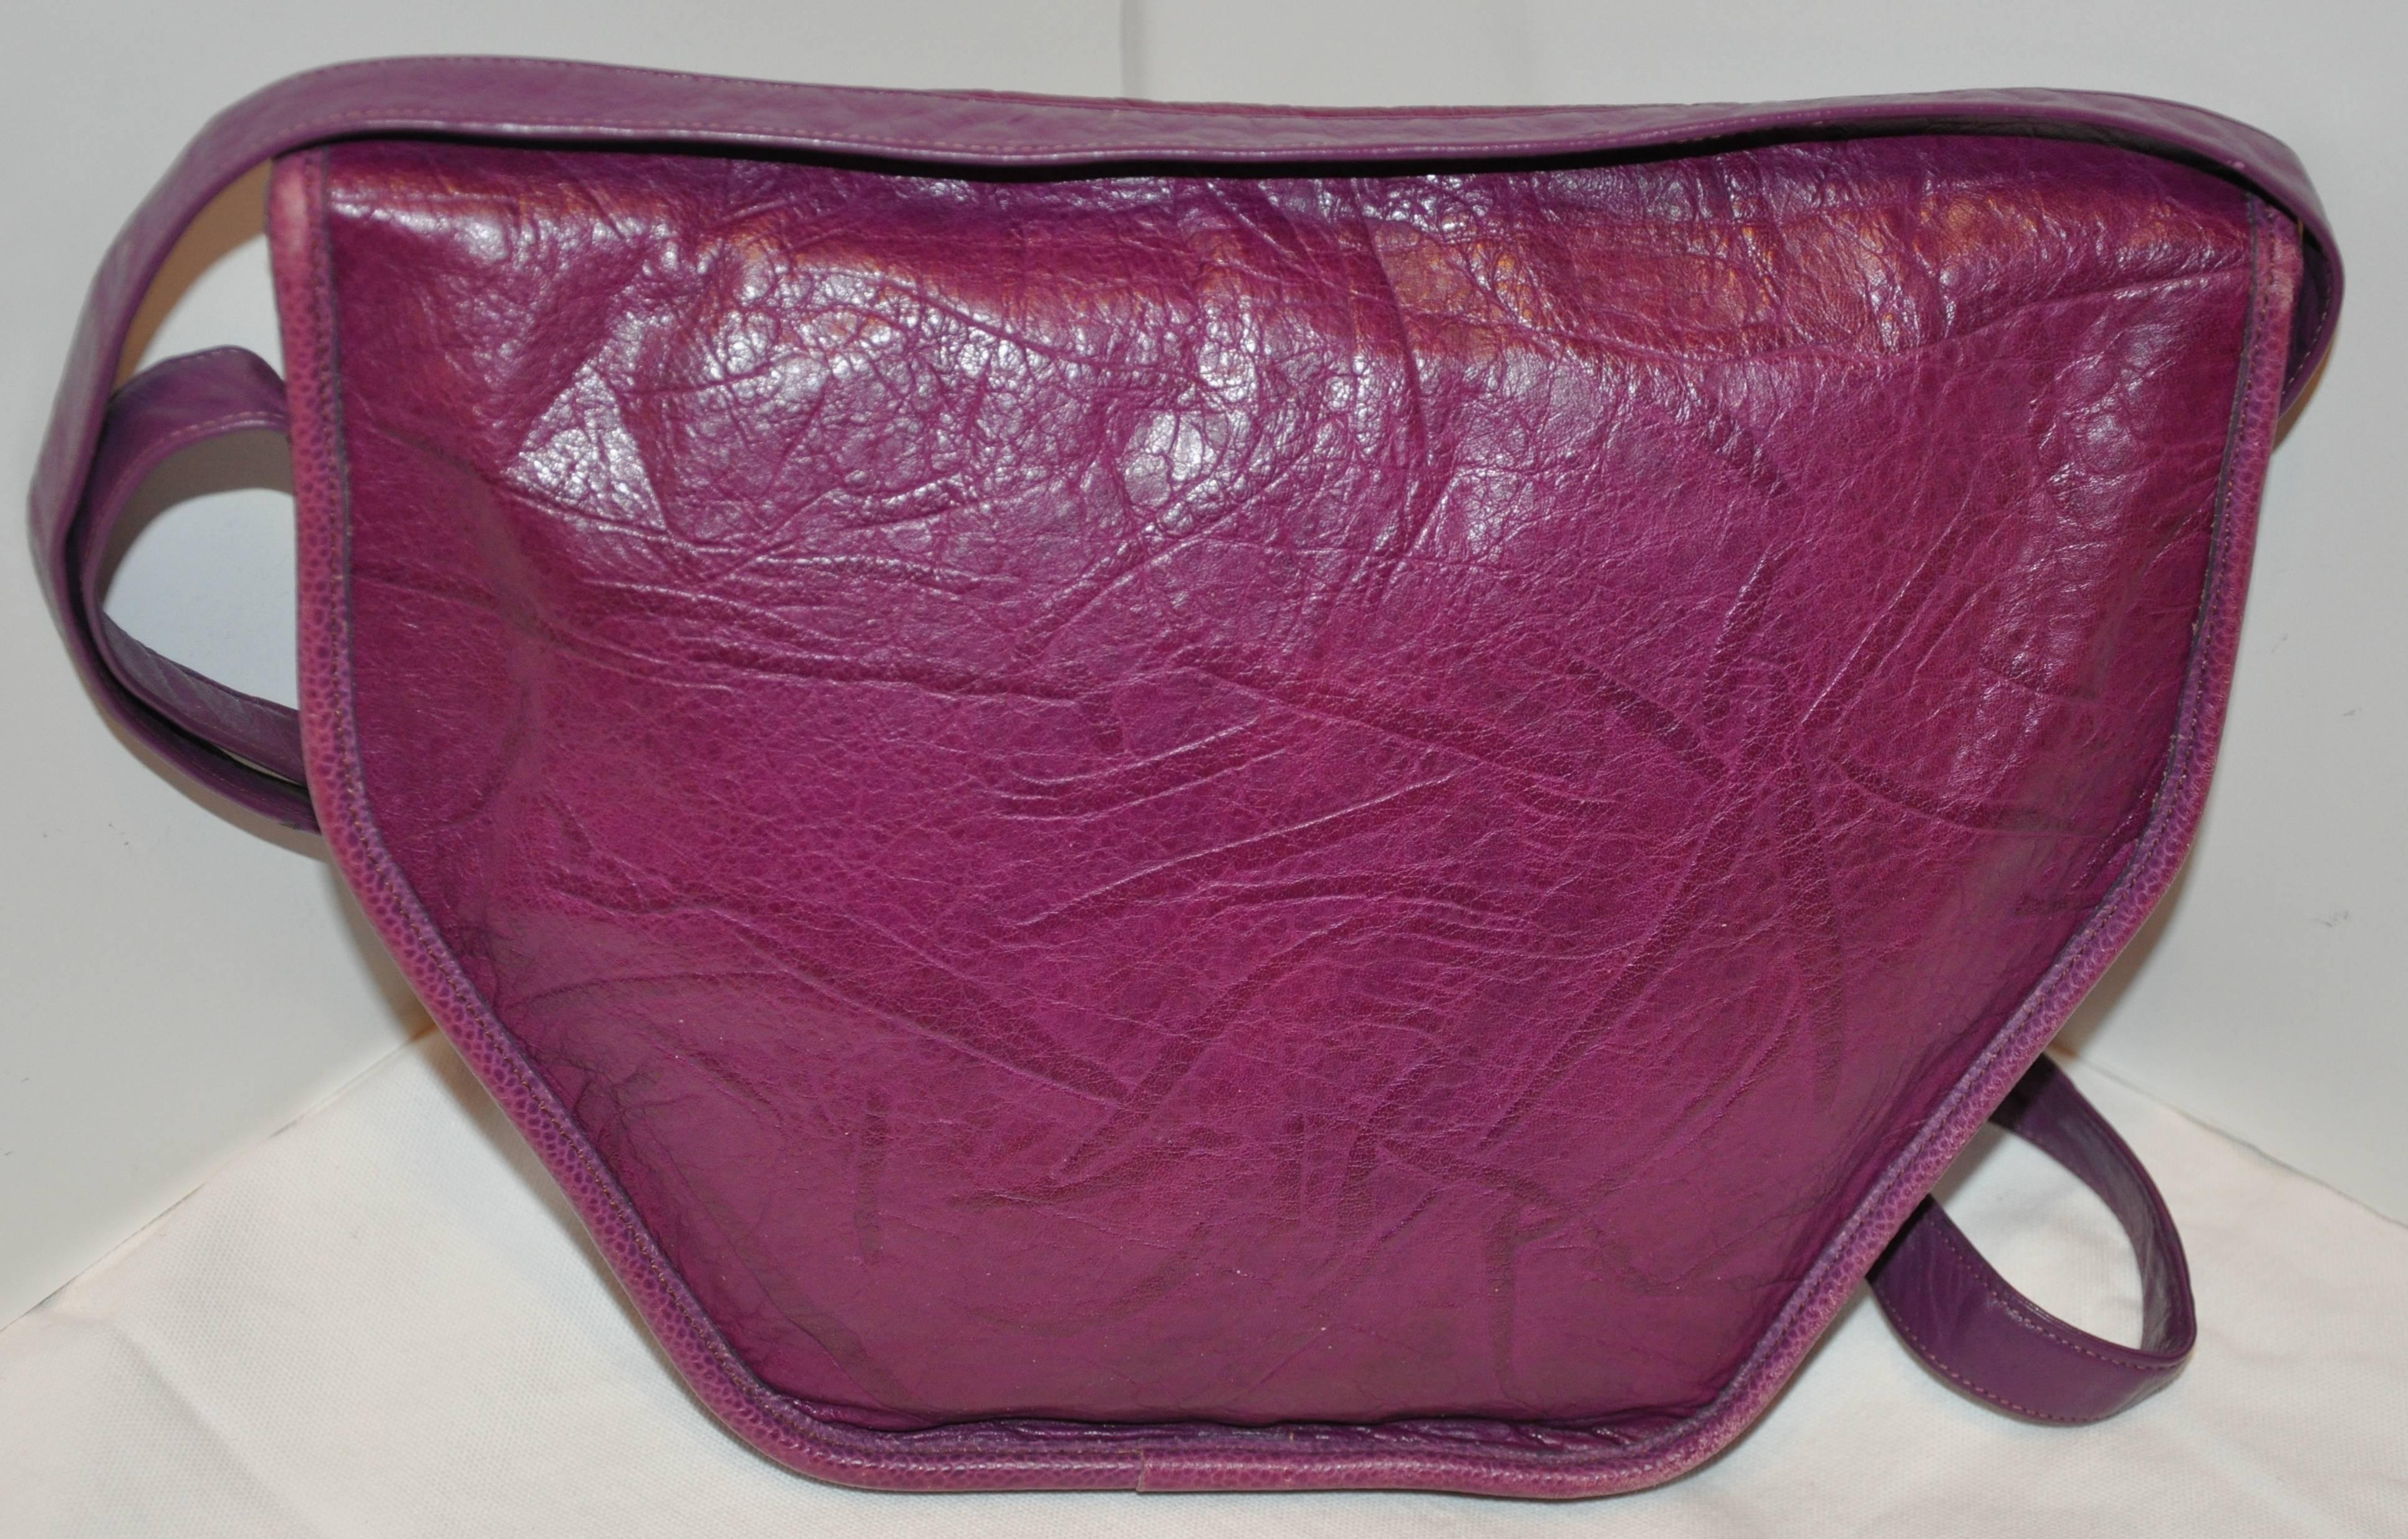        Le merveilleux sac à bandoulière Carlos Falchi en buffle violet texturé est orné du logo de la marque embossé sur le rabat avant extérieur, accentué par des alligators et des serpents embossés entourant le nom de la marque. Il y a également